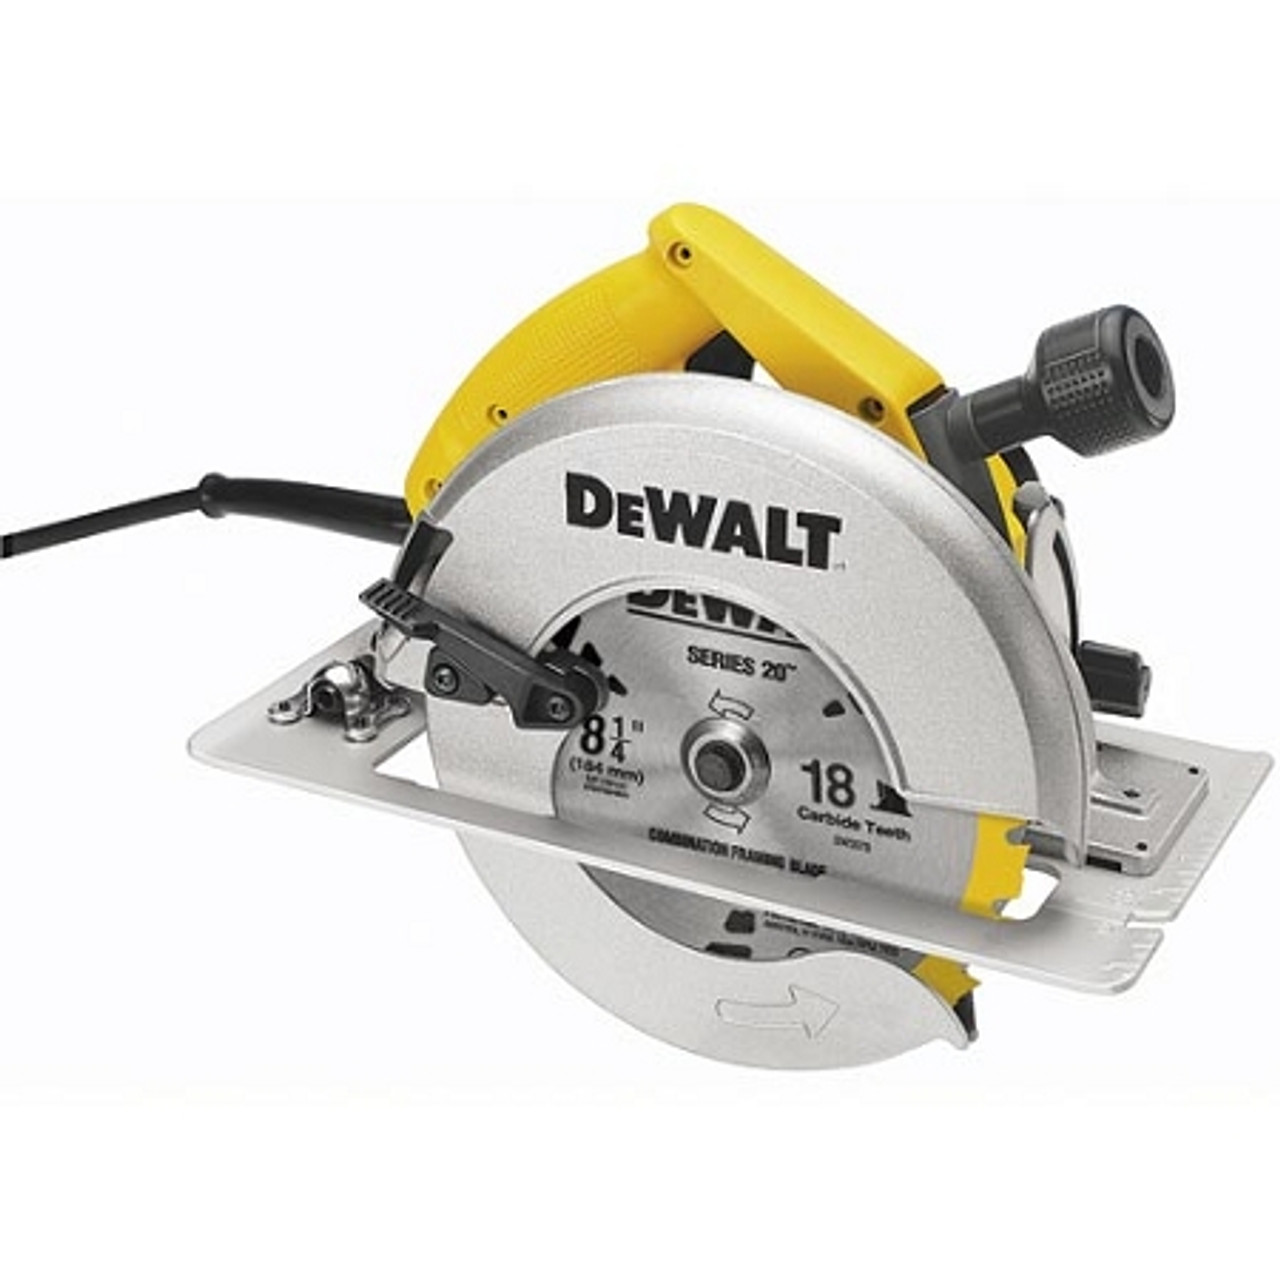 Dewalt DW384 8-1/4 (210mm) Circular Saw With Rear Pivot Depth Of Cut  Adjustment And